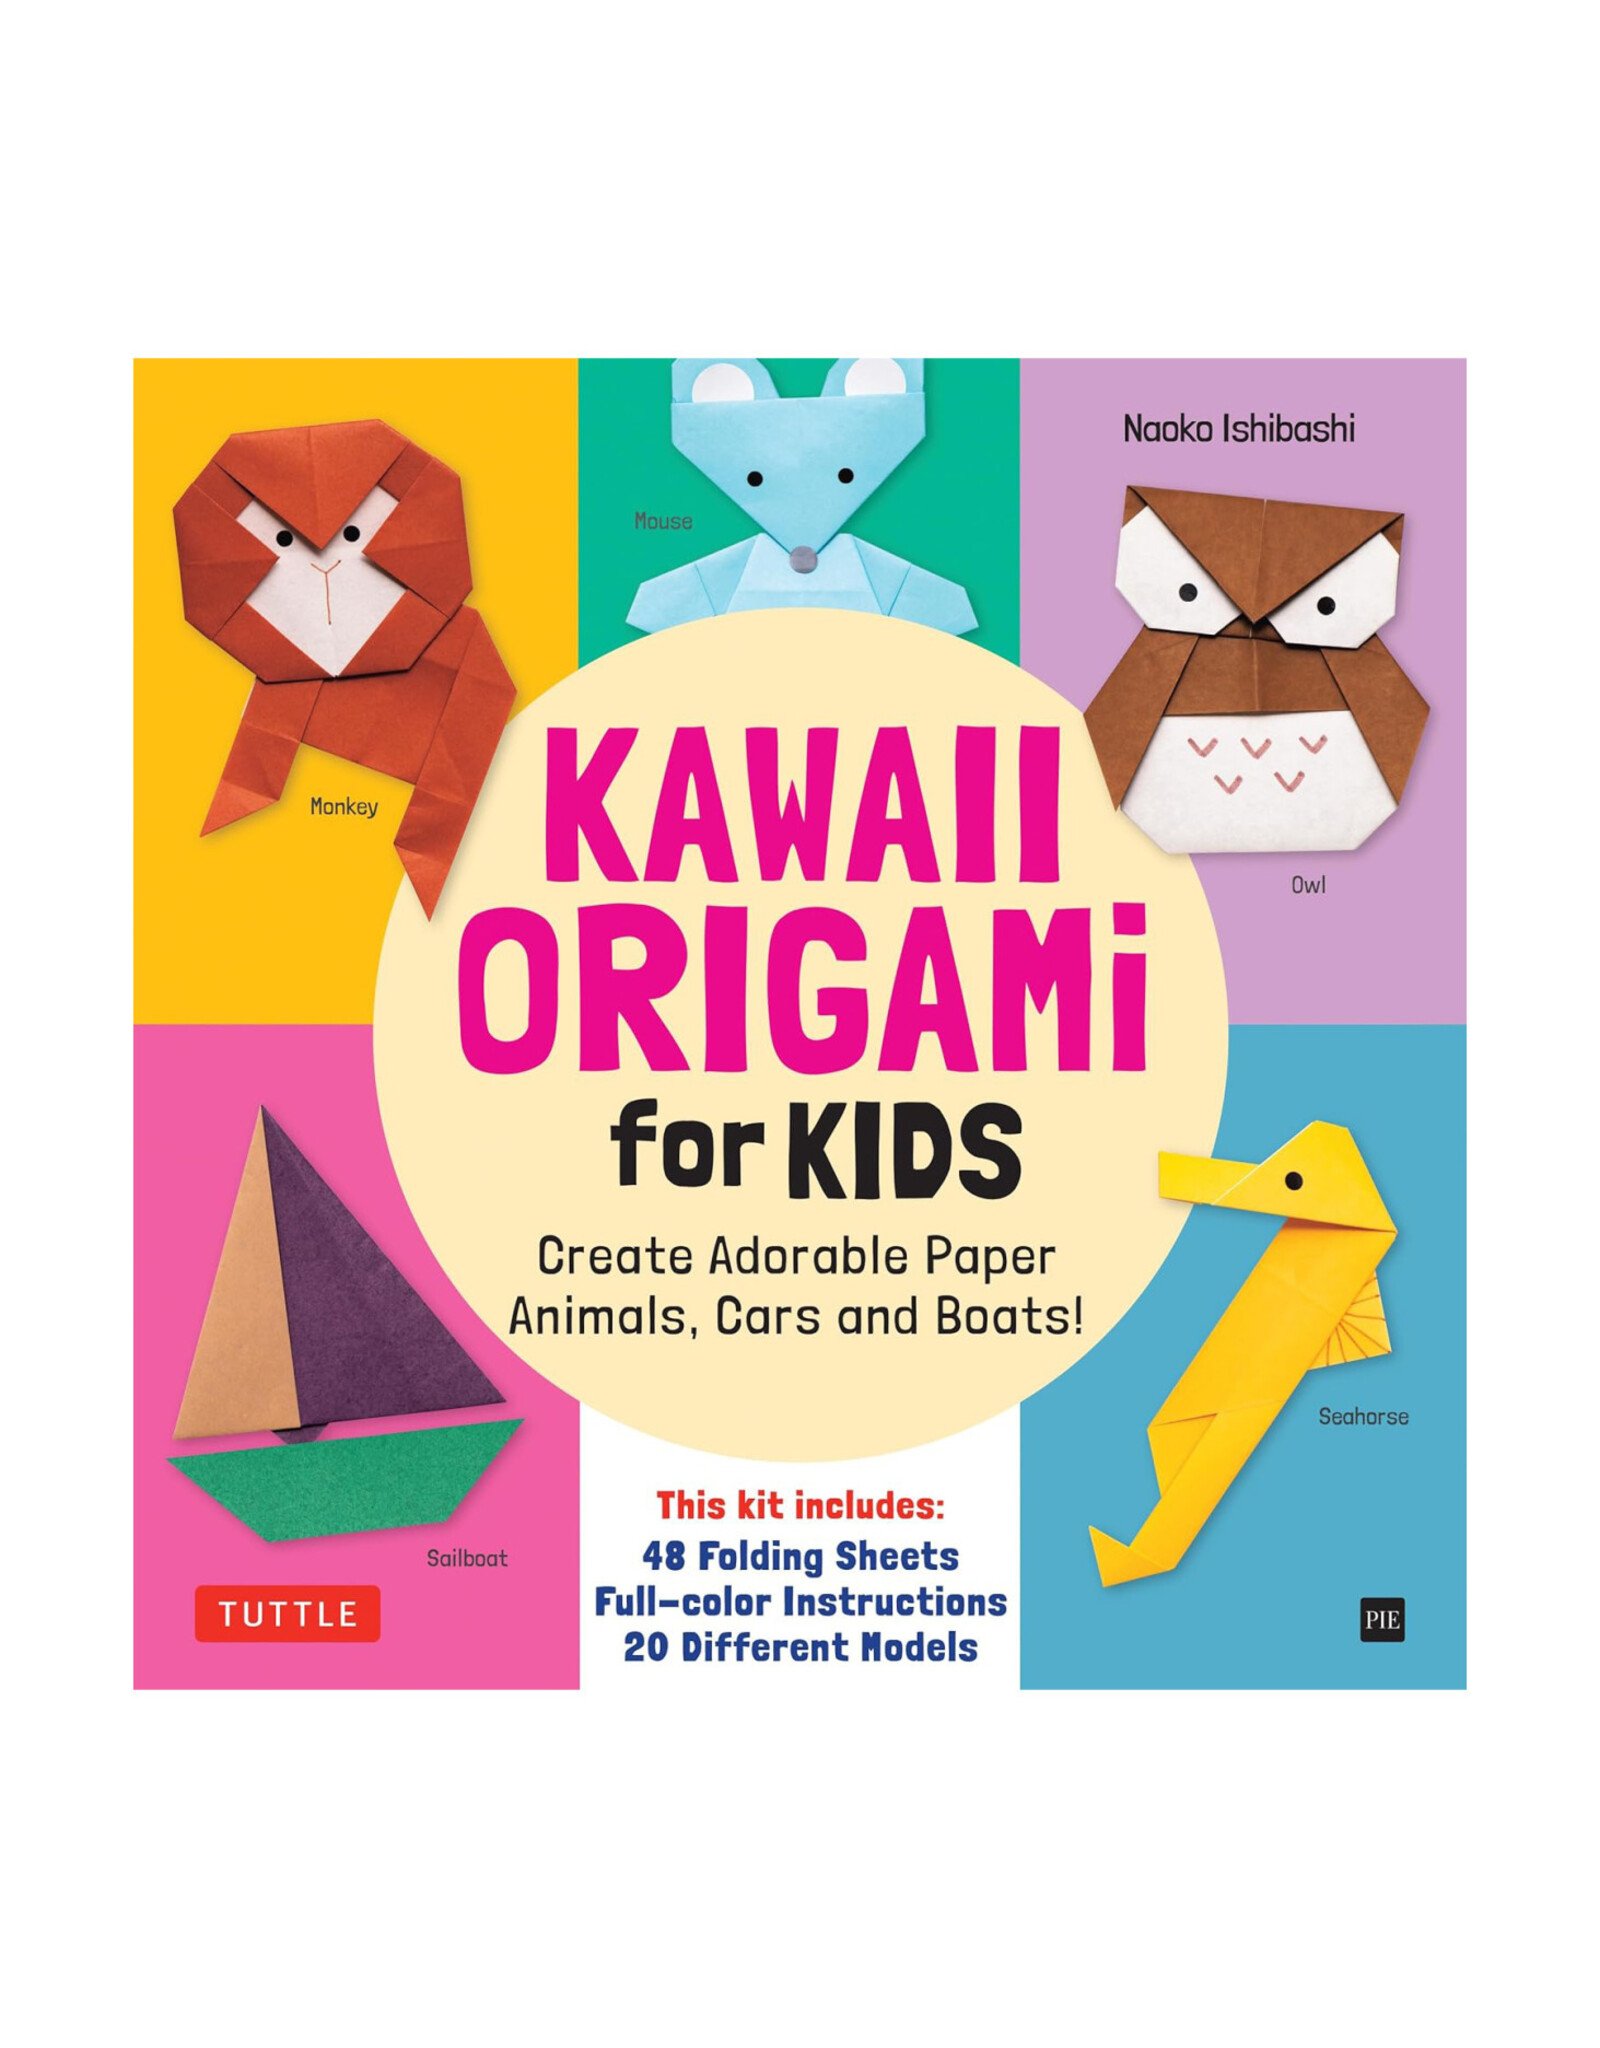 Kawaii Origami Kit for Kids